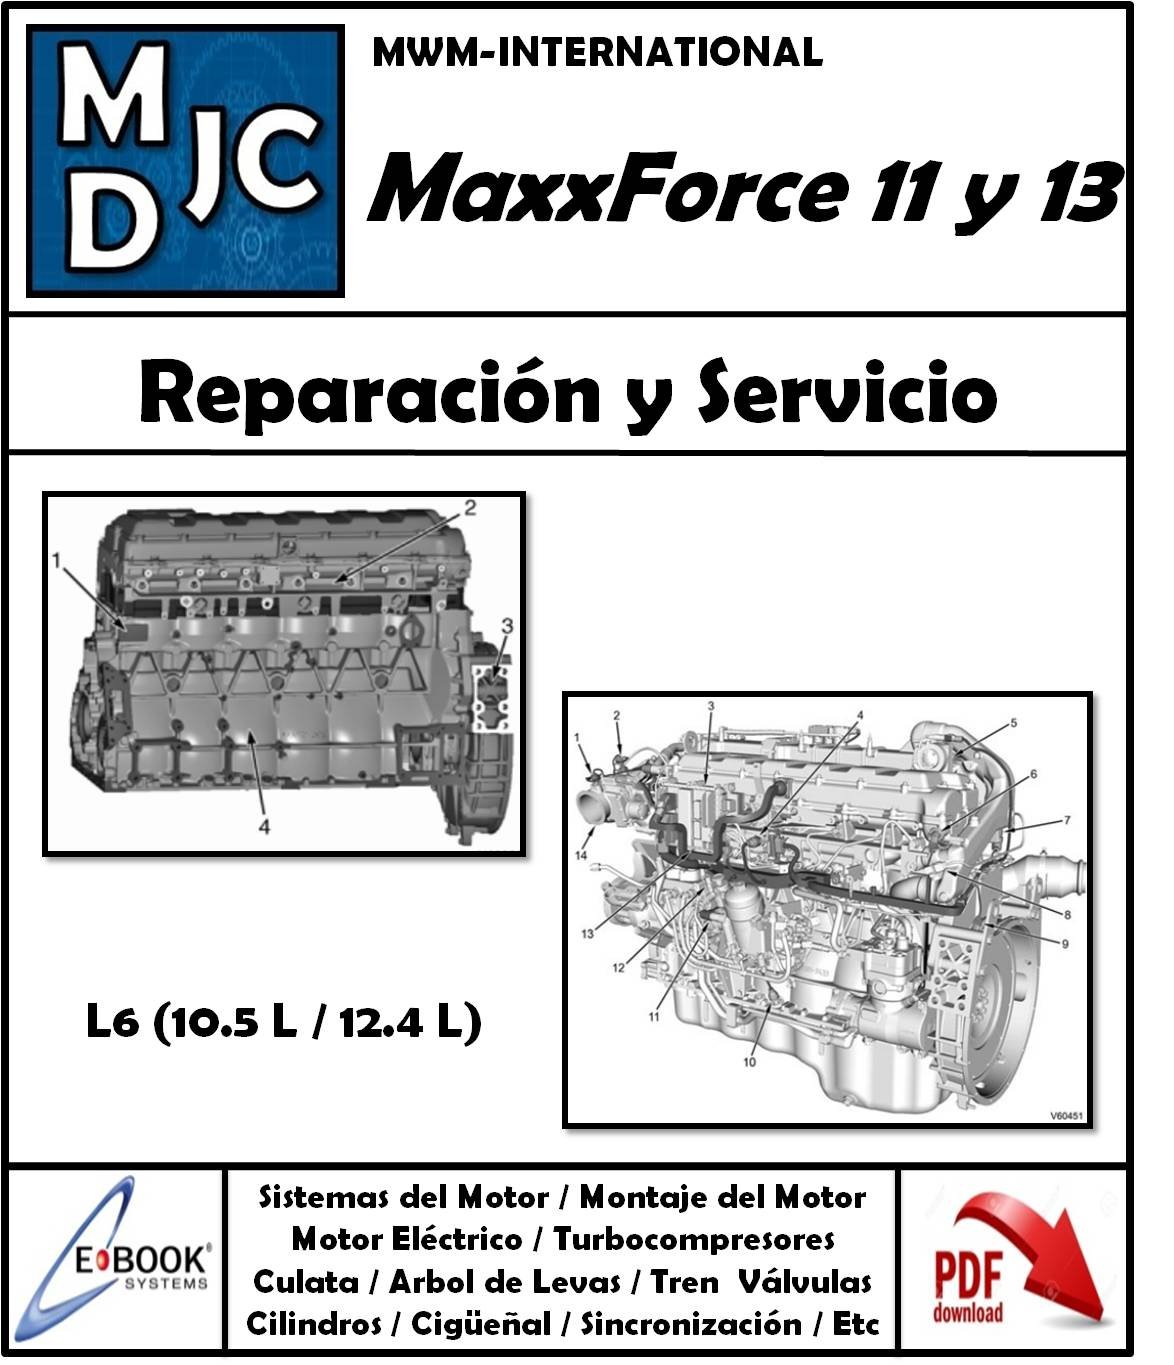 Manual de Taller (Reparación y Servicio) Motor International - Navistar Maxxforce 11 y 13